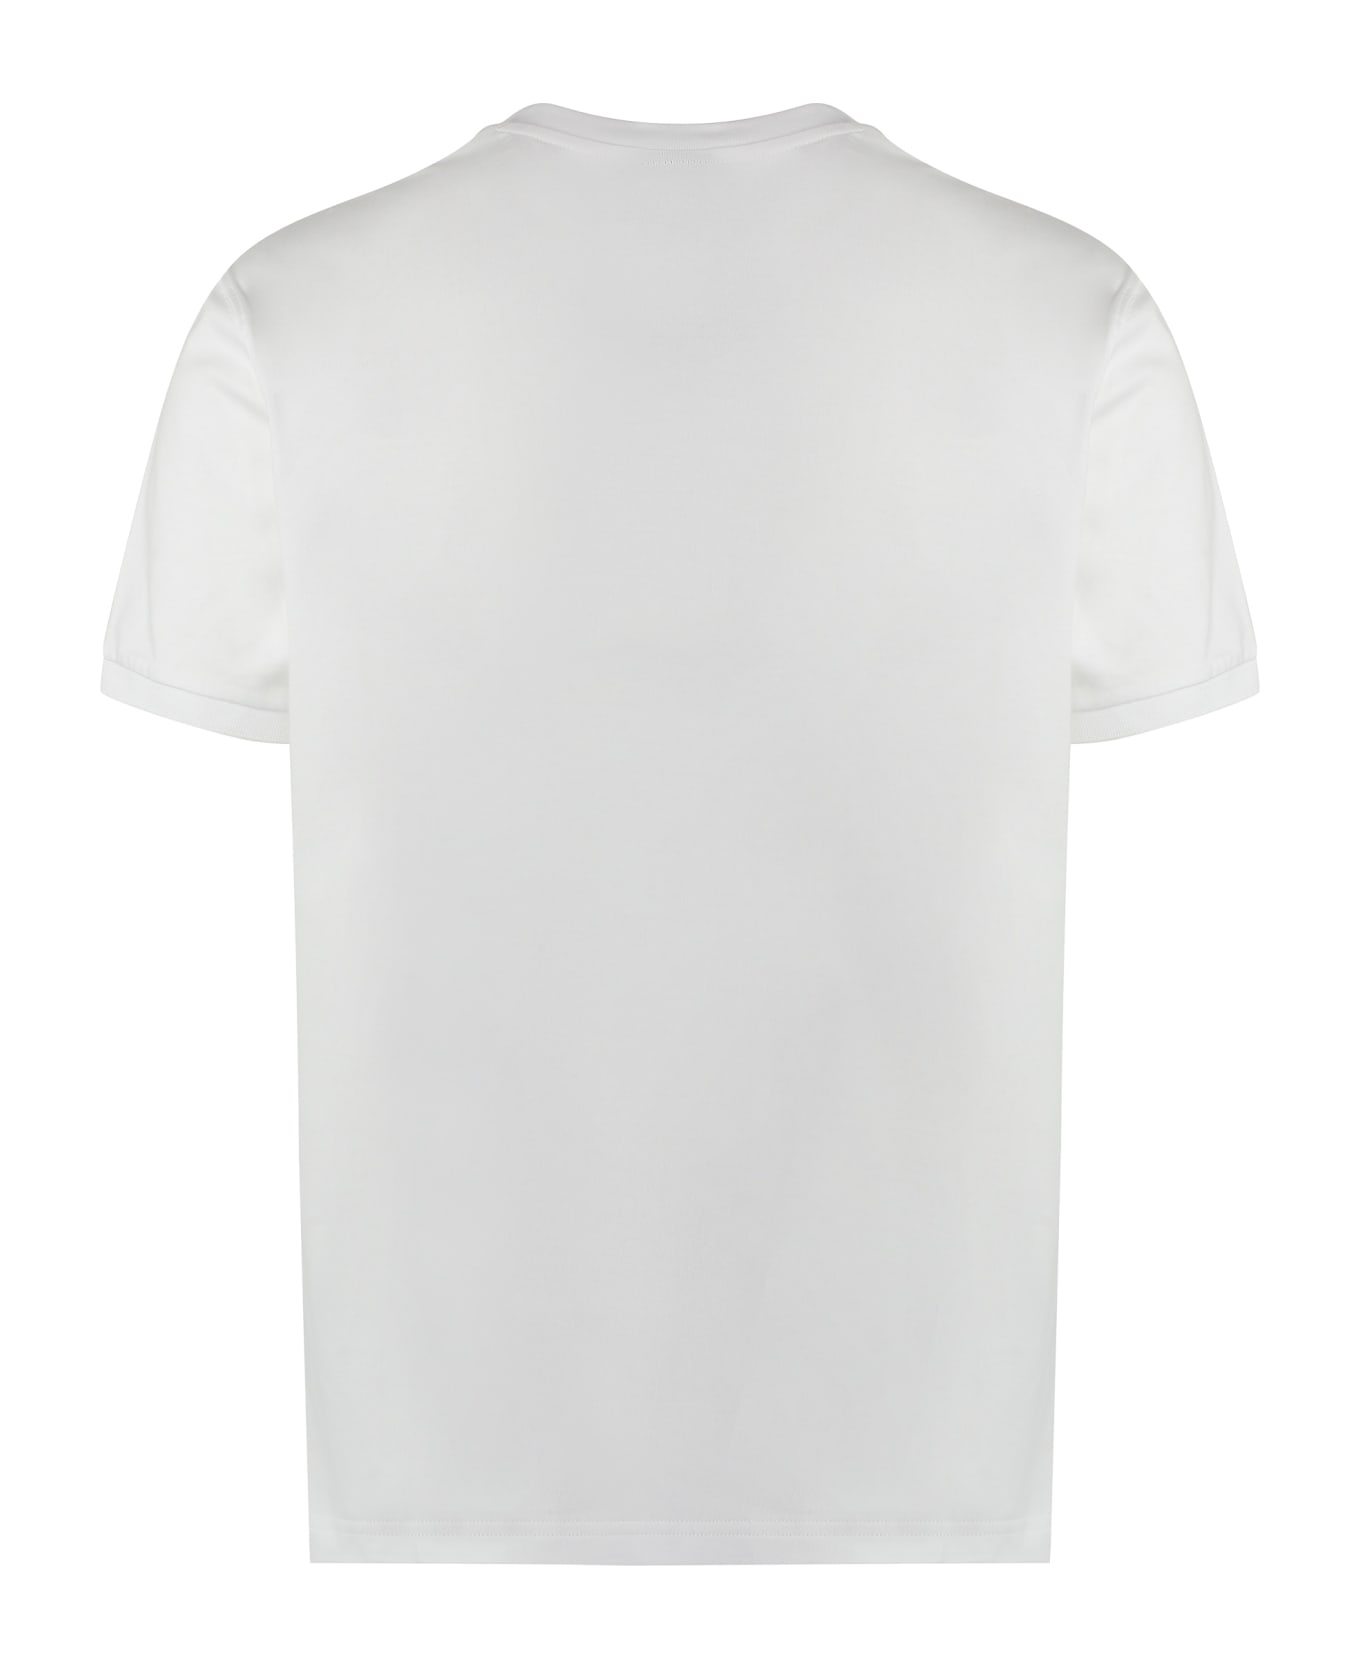 Paul&Shark Logo Cotton T-shirt シャツ